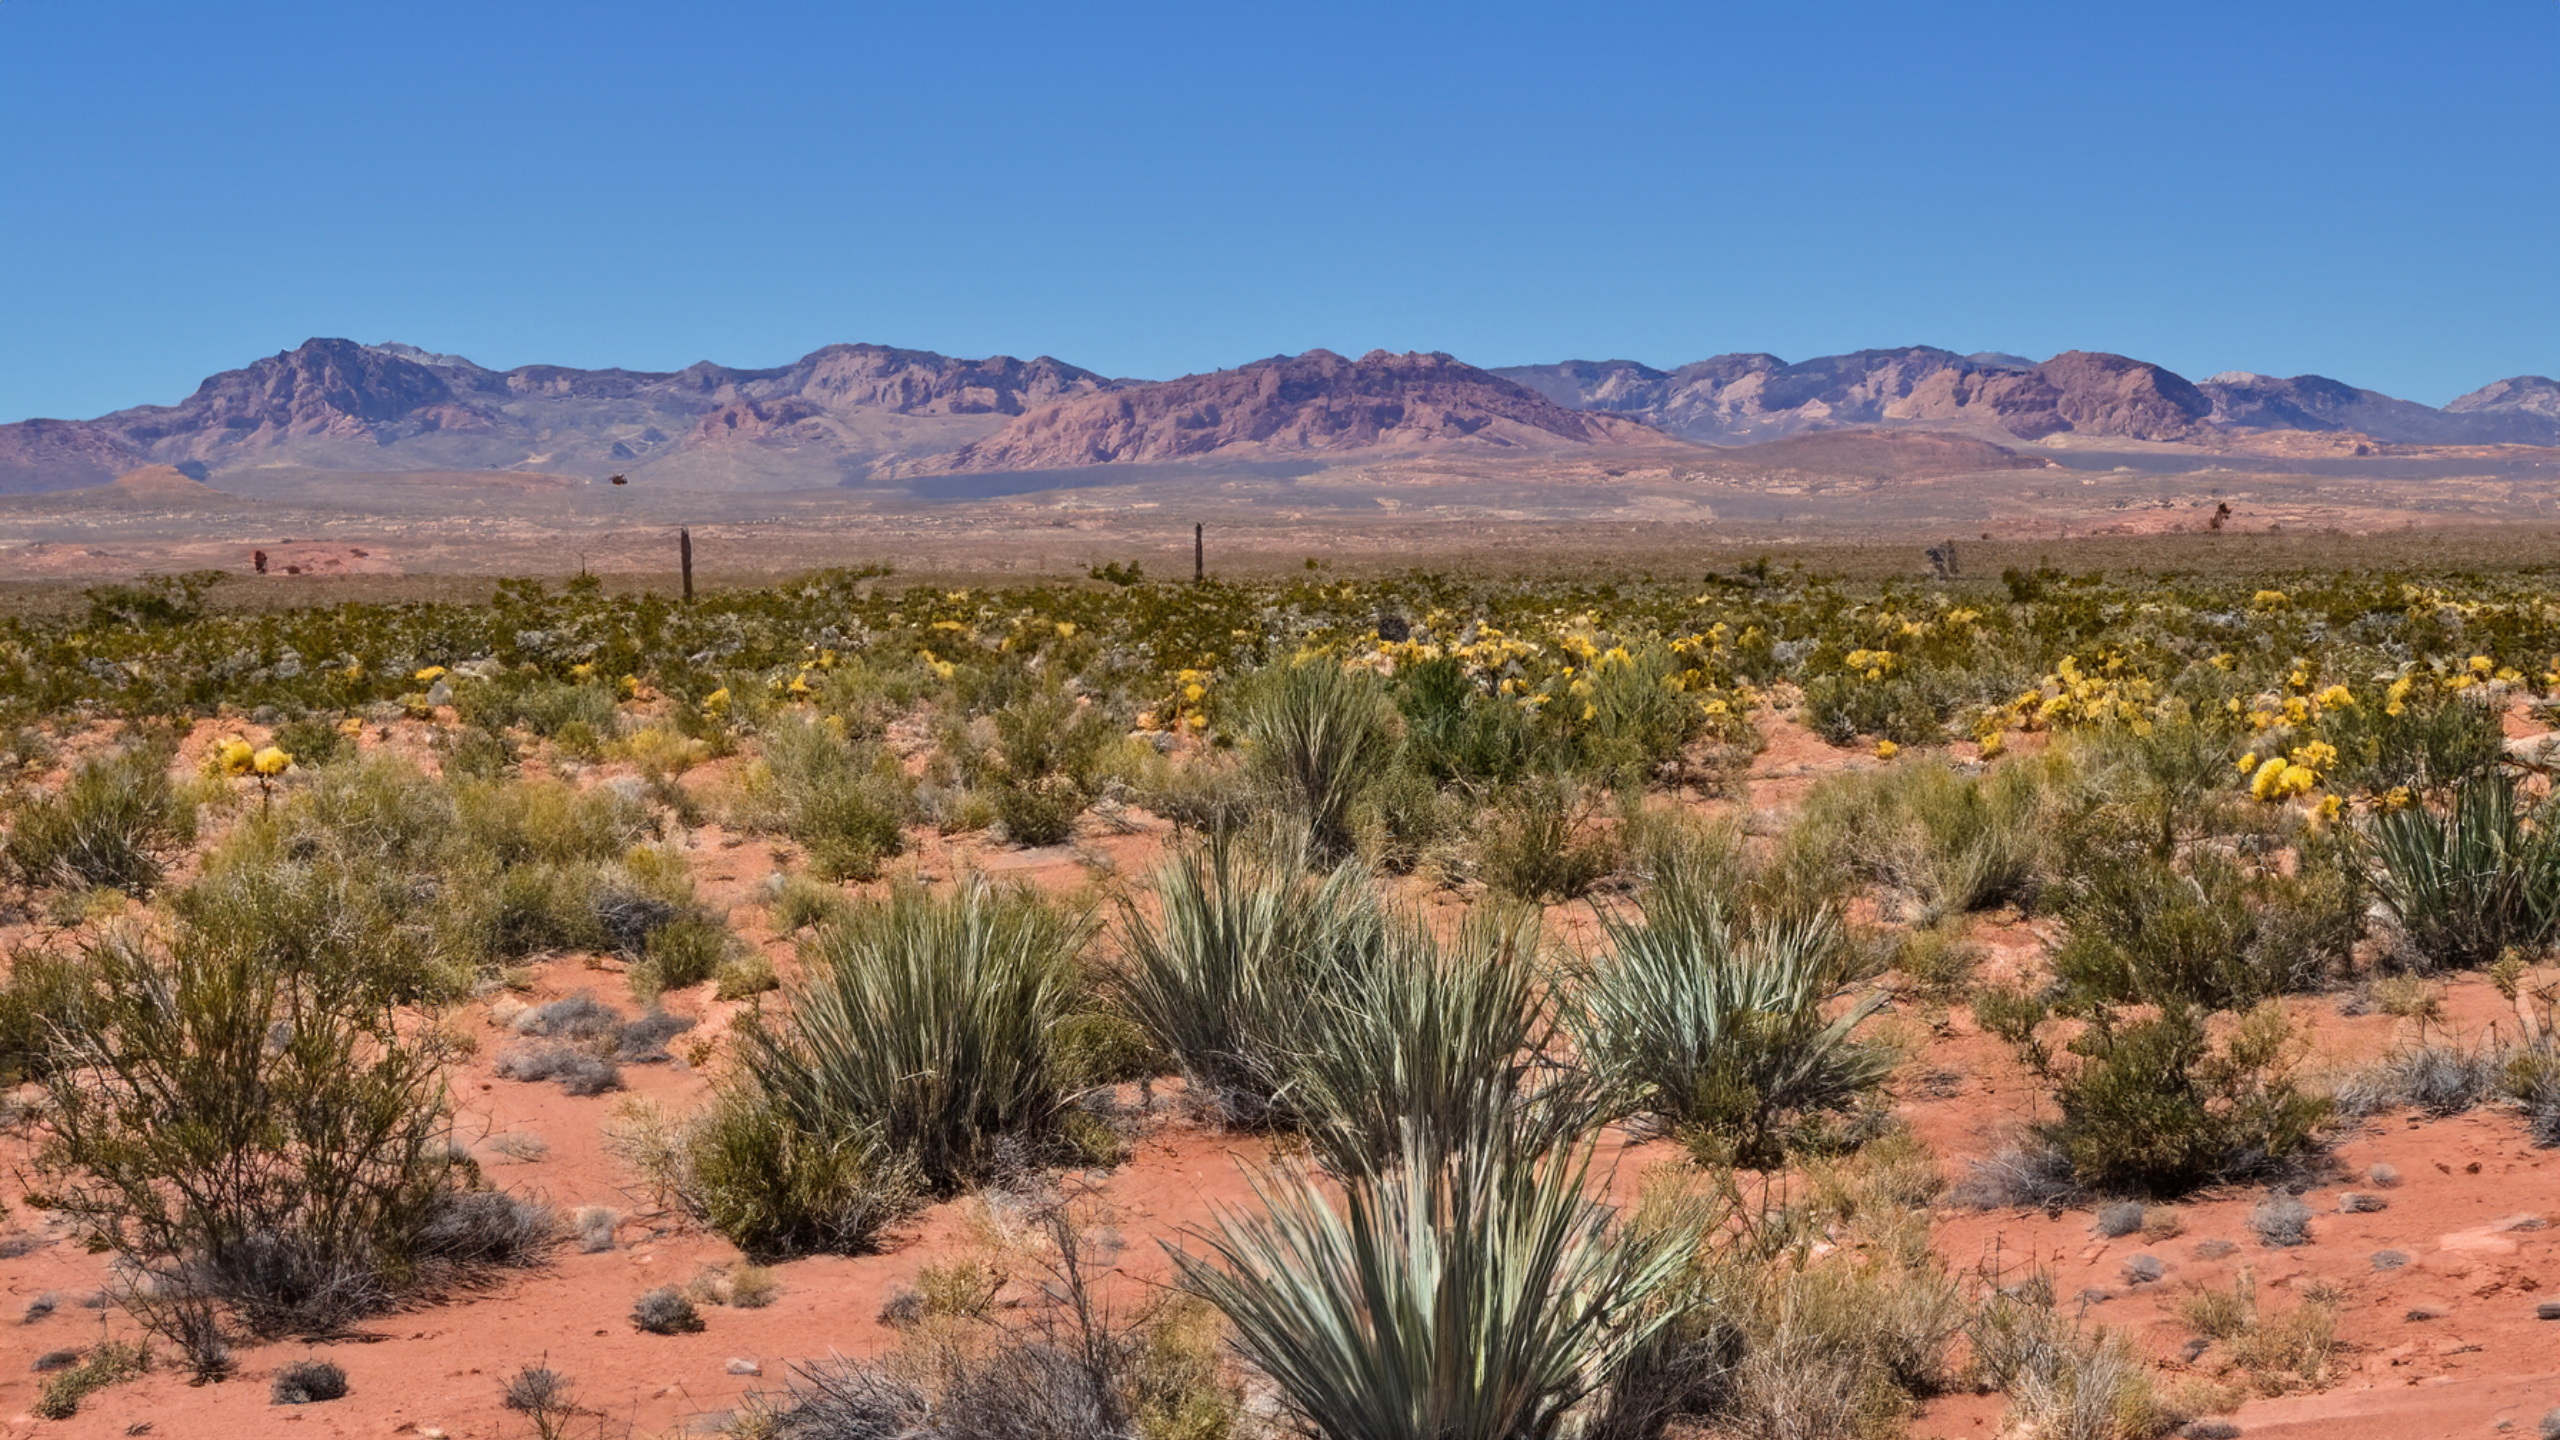 Mesquite Nature Nevada Area 51 Pinon Pine Landscape 2560x1440